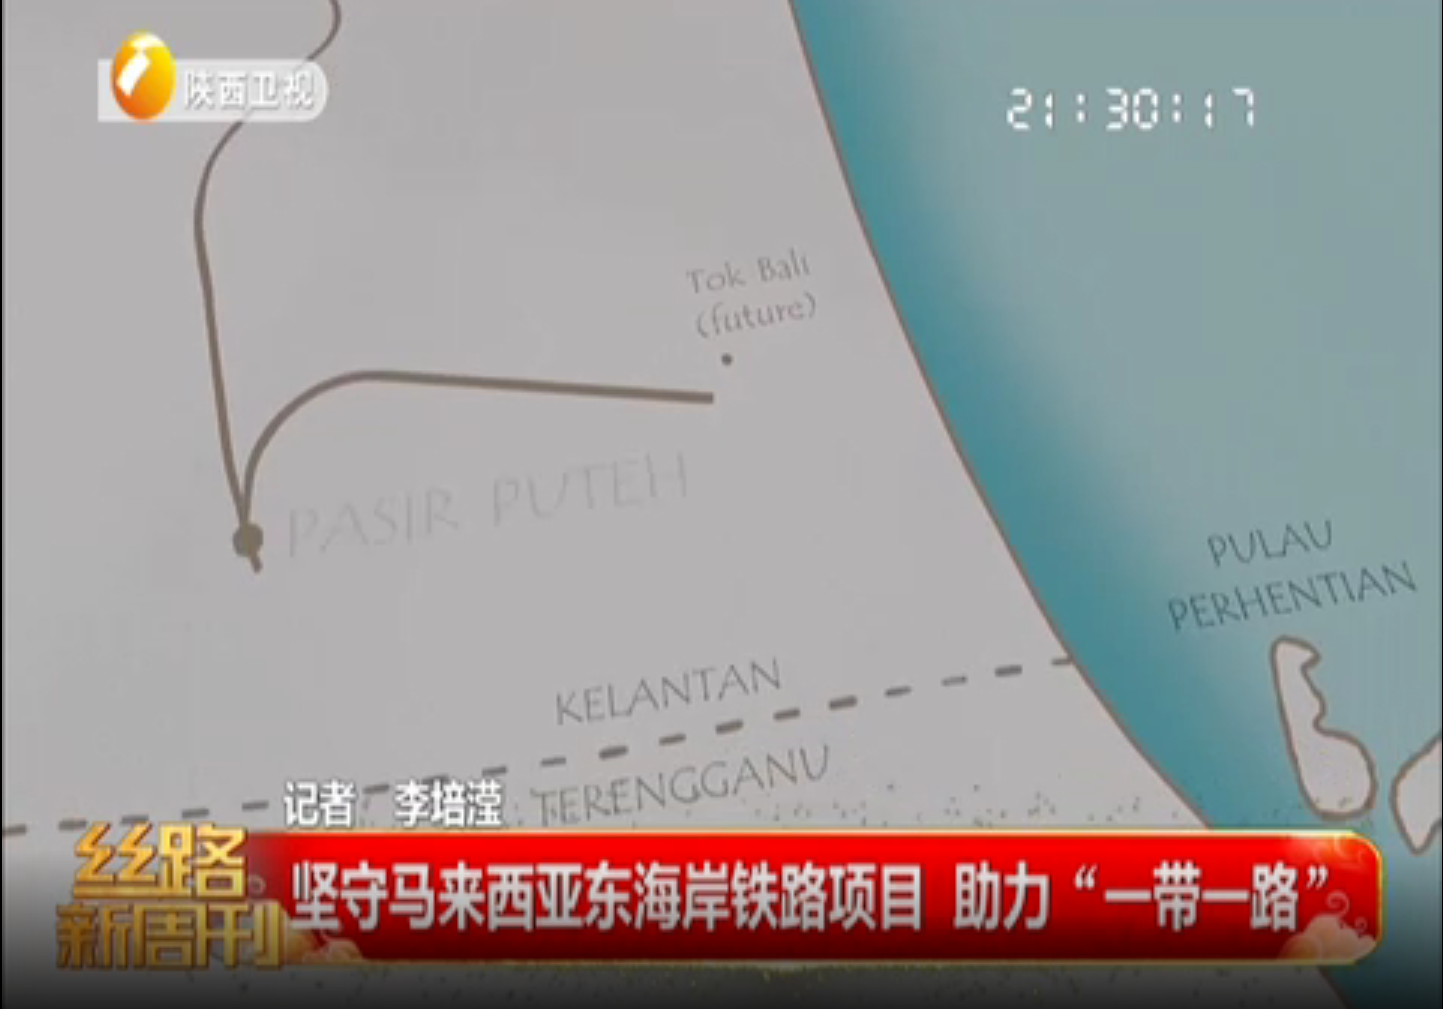 2022年奥运,2022年。奥运我会的画,2022奥运会门票价格:
中国交建与马来西亚铁路衔接公司在马来西亚关丹举行开工仪式